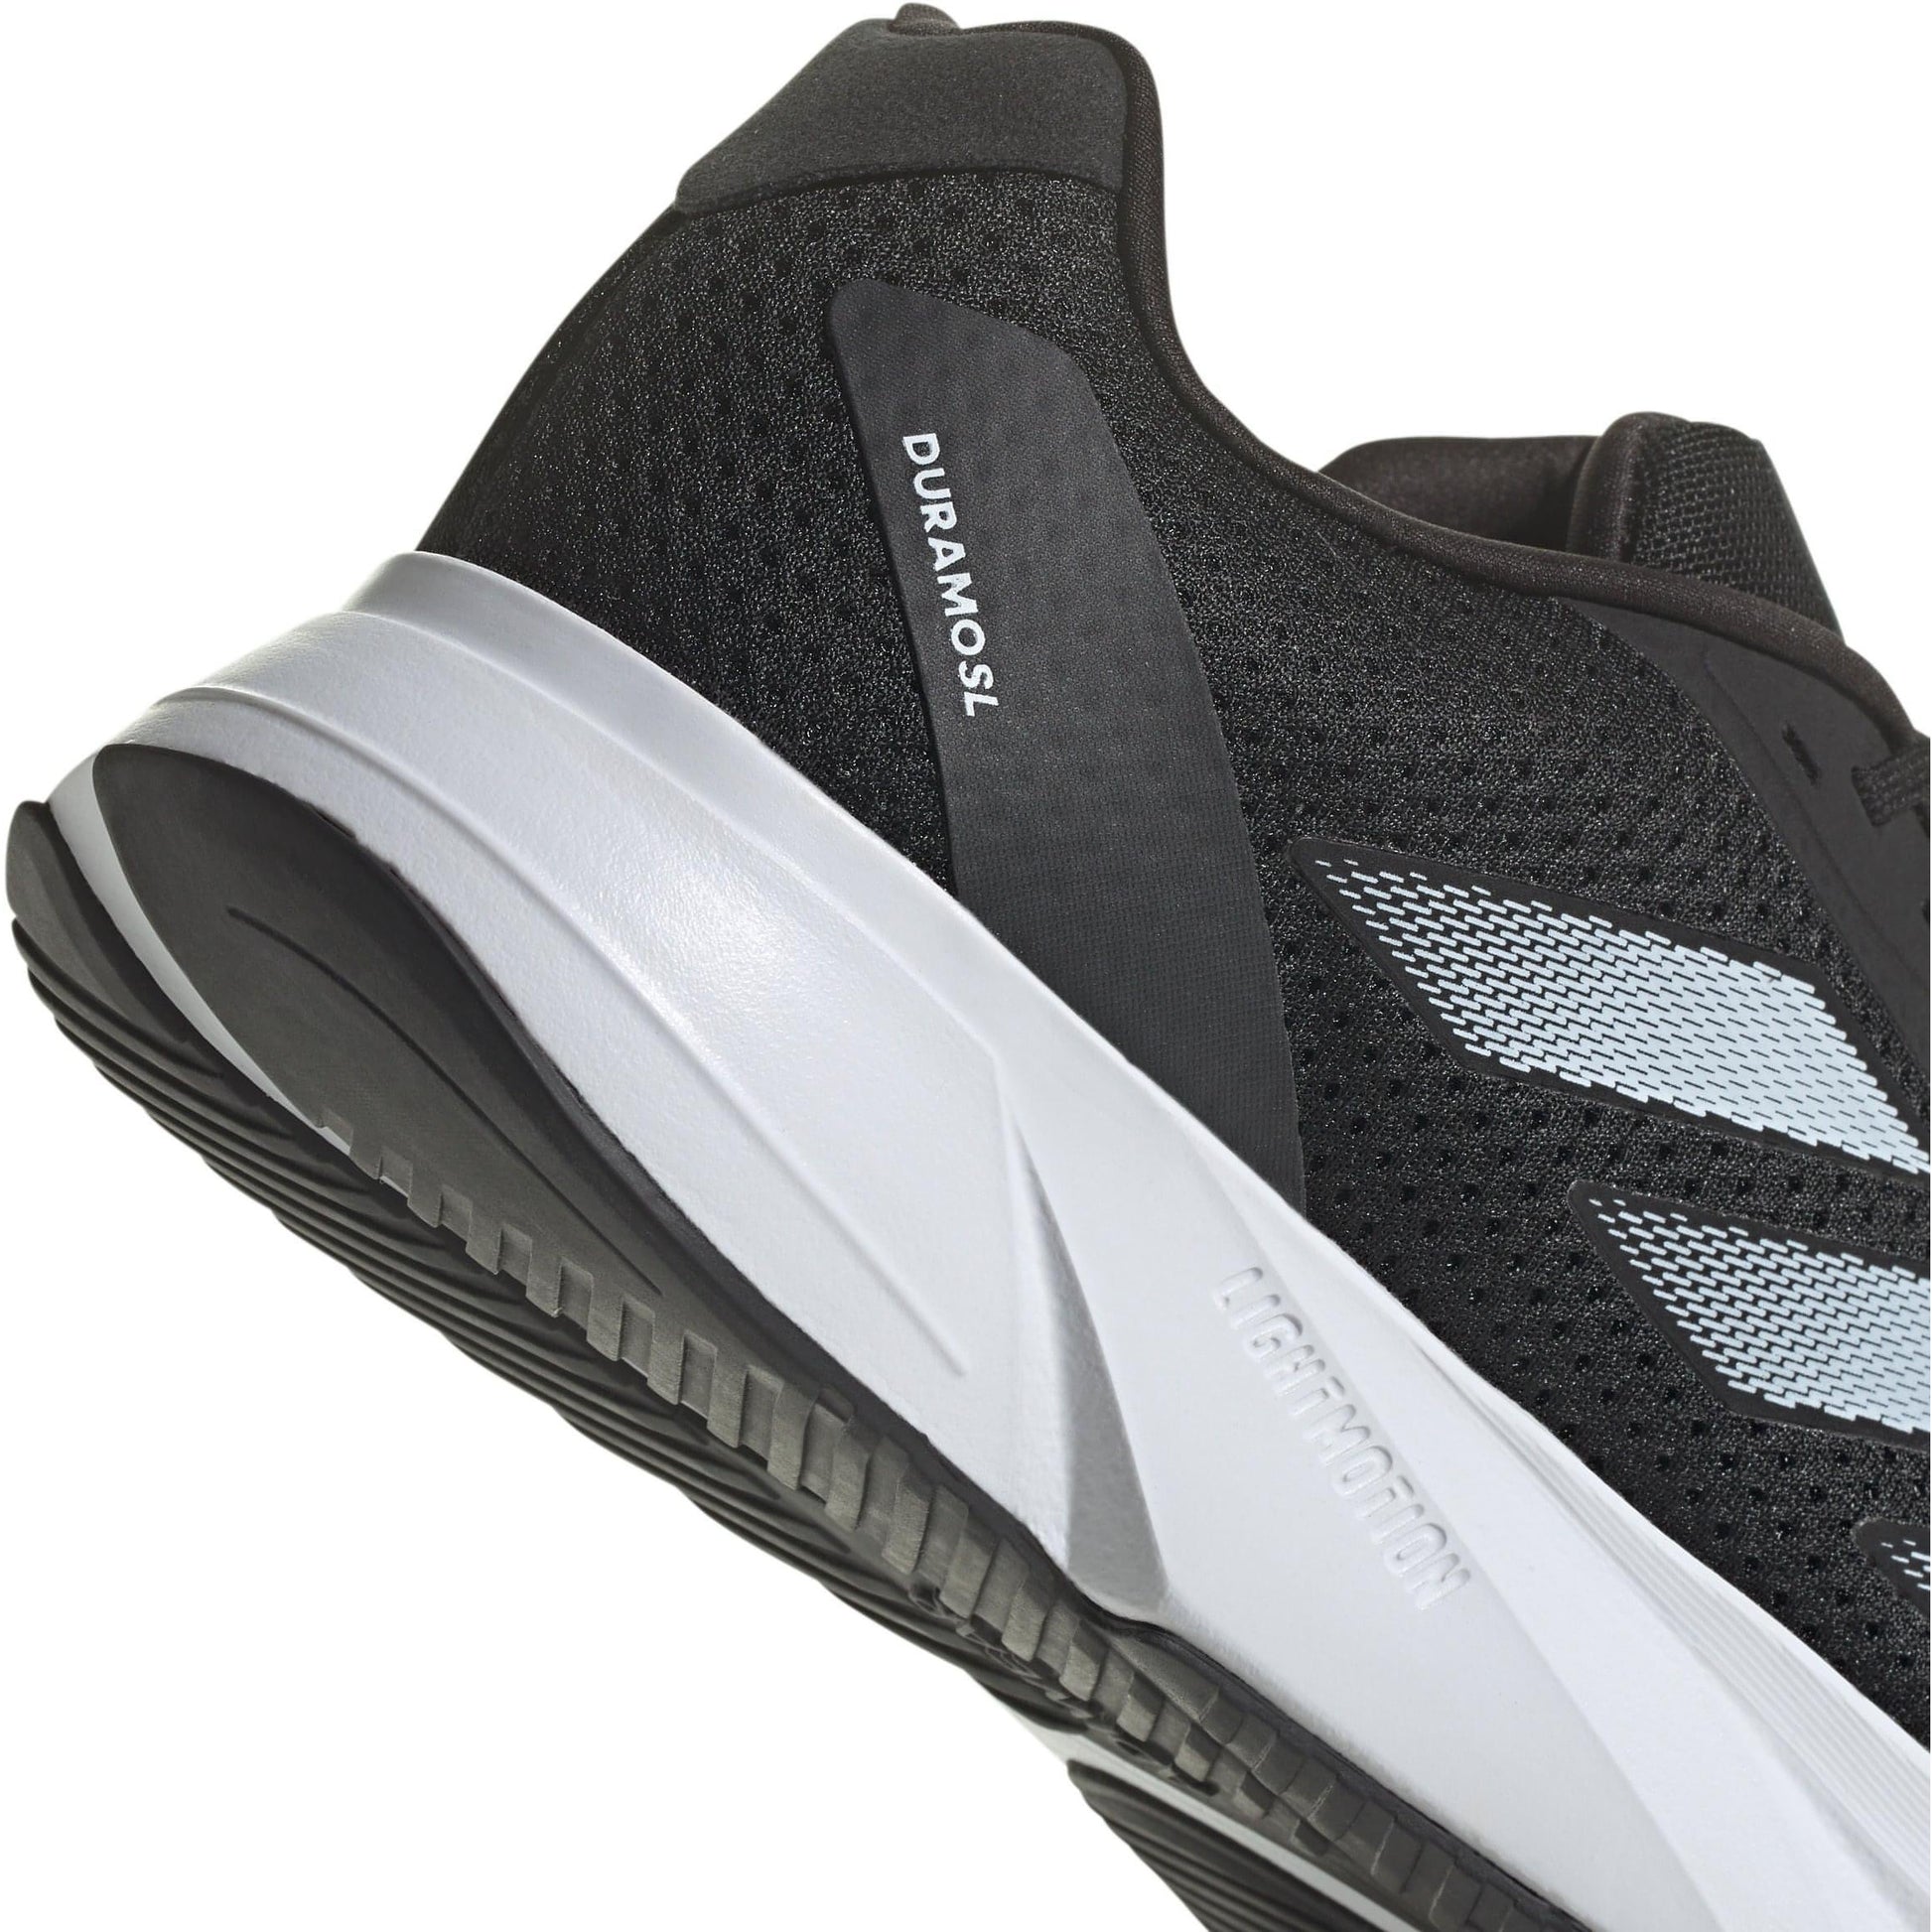 Adidas Duramo Sl Shoes Id9849 Details